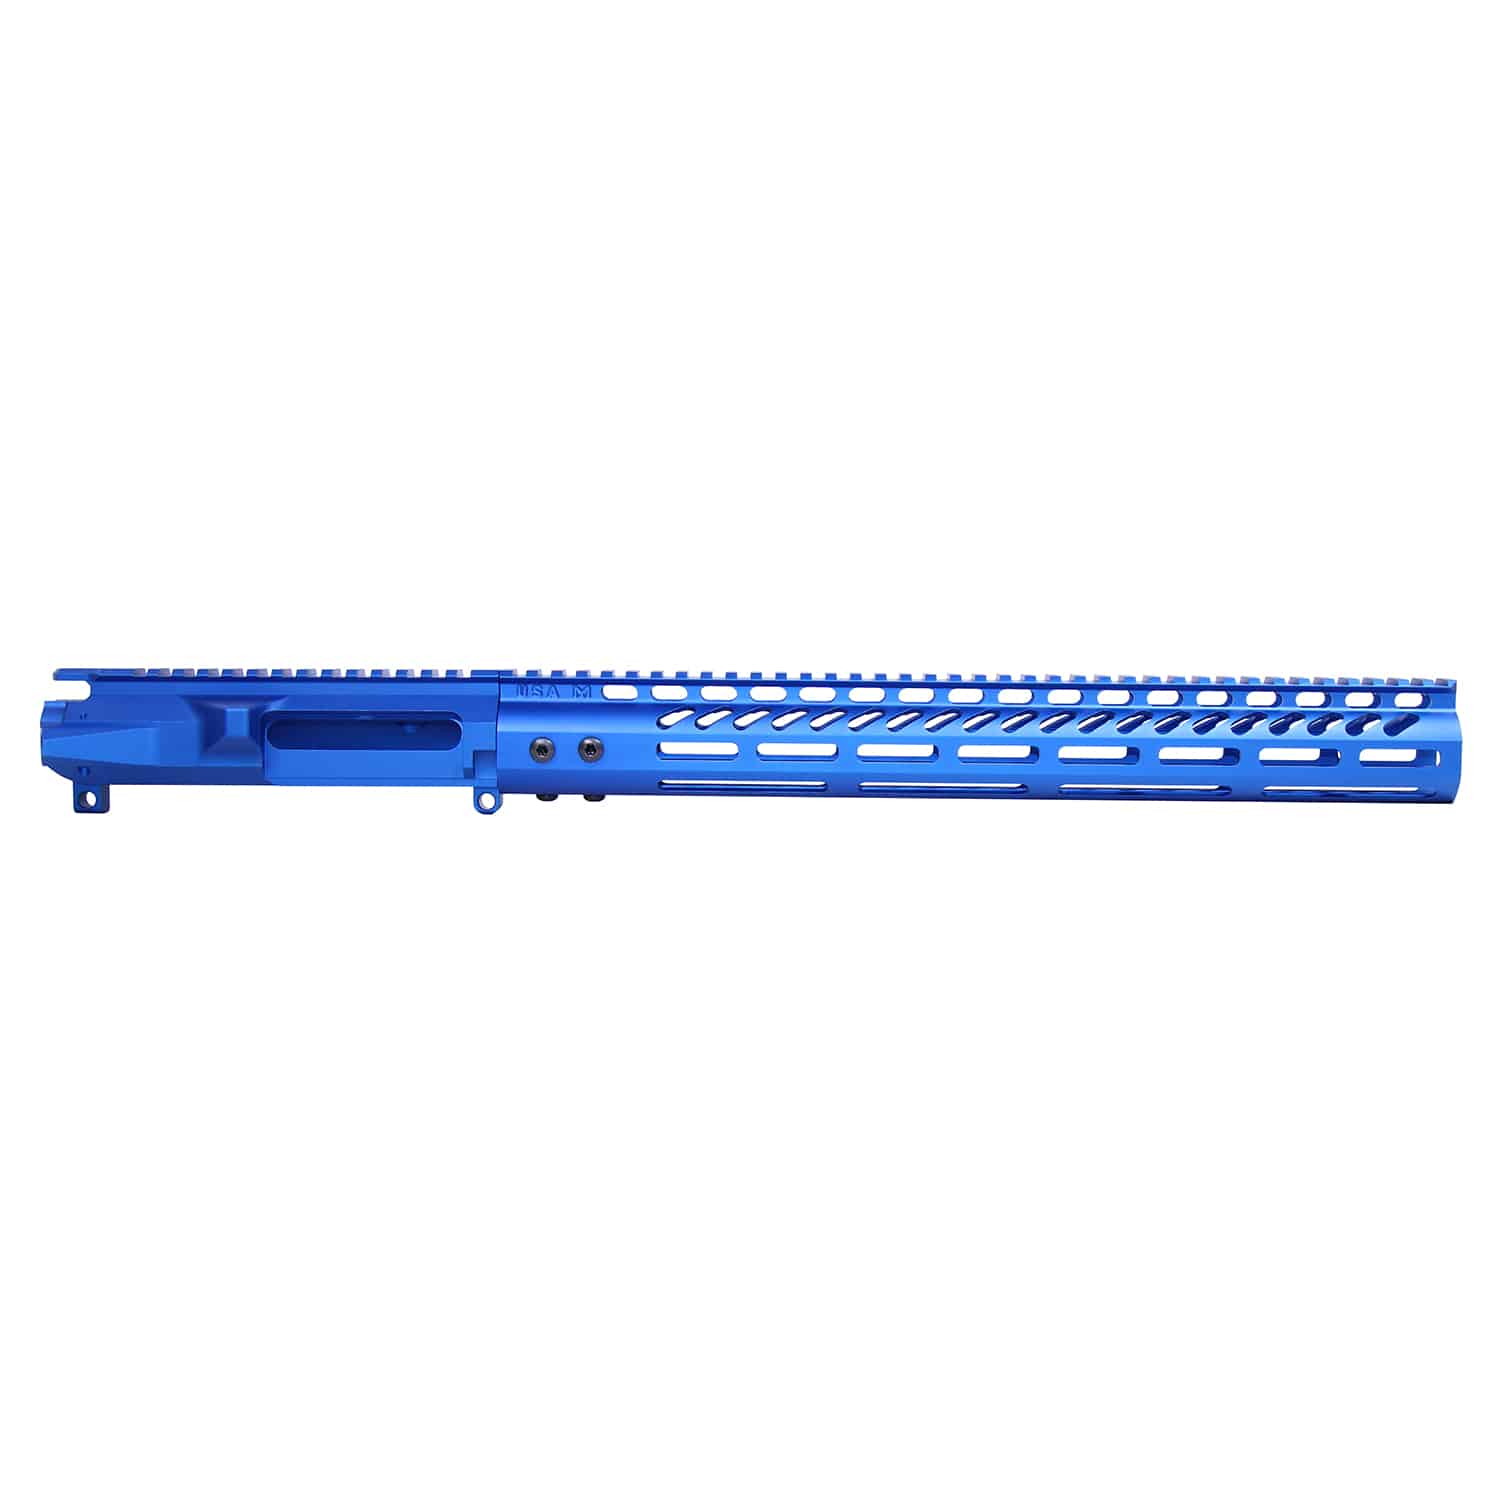 AR-15 Stripped Billet Upper Receiver & 15" Ultralight Series M-LOK Handguard Combo Set (Anodized Blue)